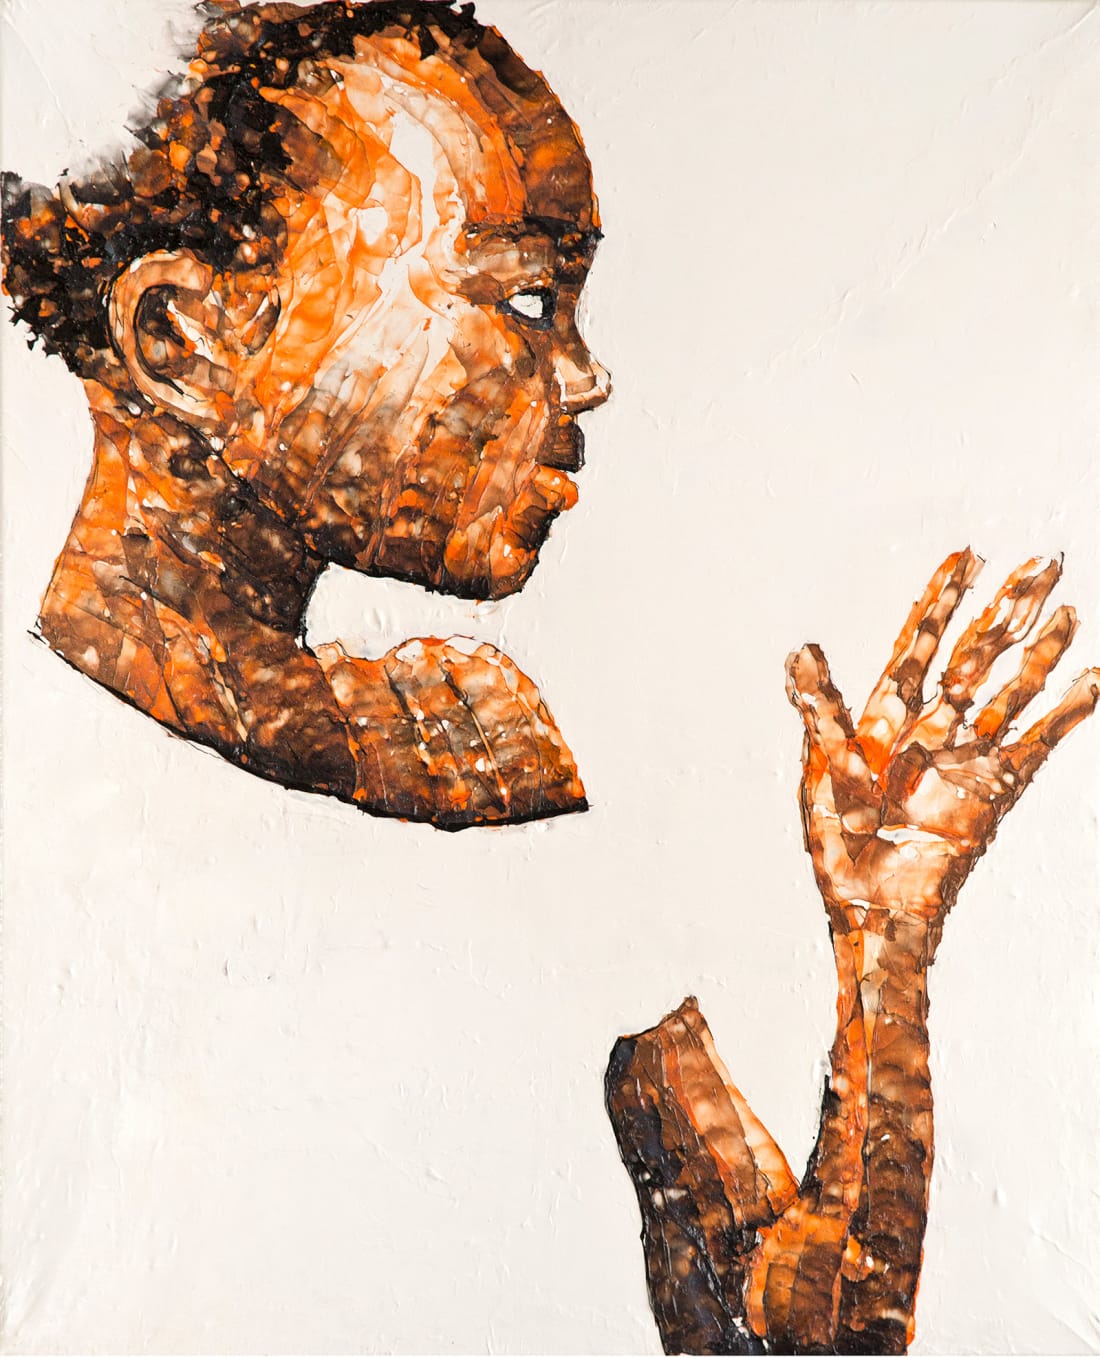 Họa sĩ Nam Phi vẽ tranh từ rác thải nhựa, kết quả là những tác phẩm kinh ngạc đến mức khó tin - Ảnh 4.